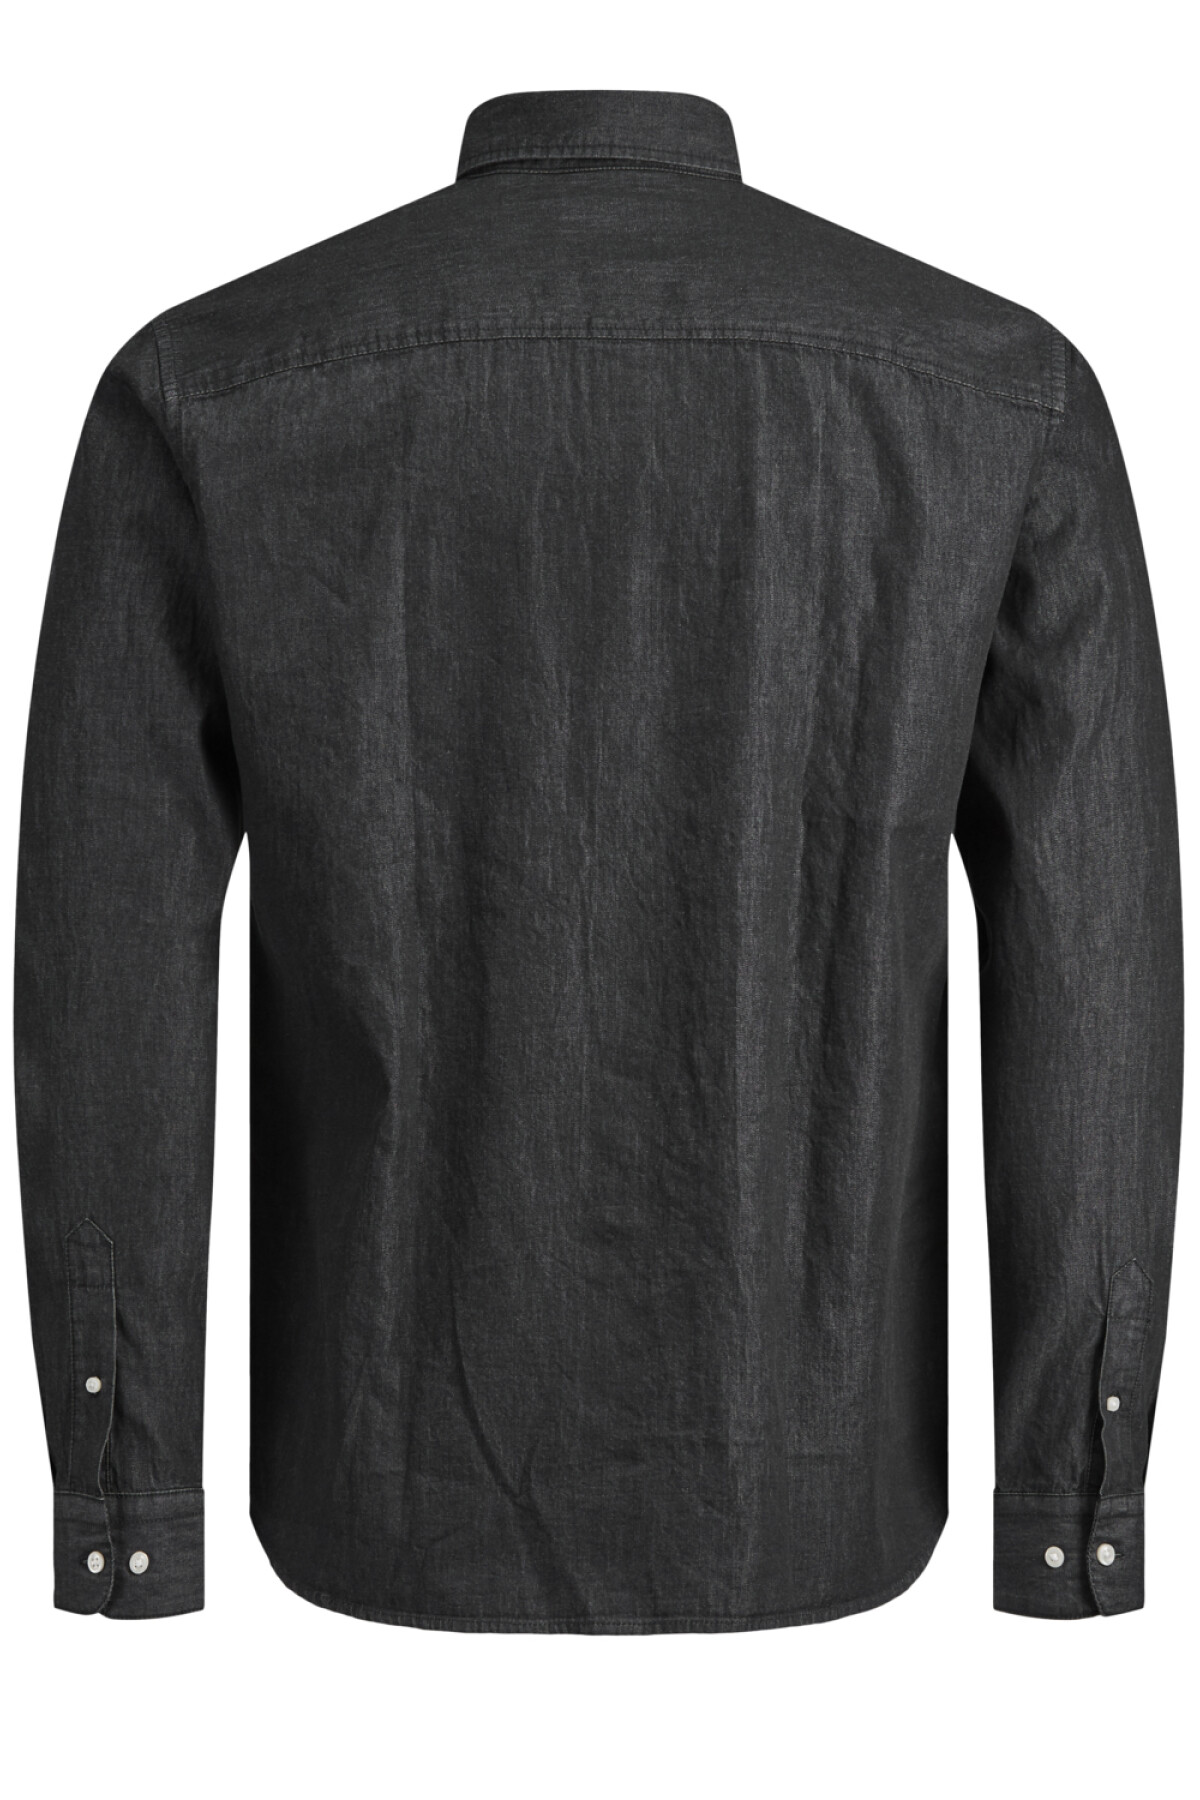 Camisa Plain Clásica Con Acabado Denim Black Denim